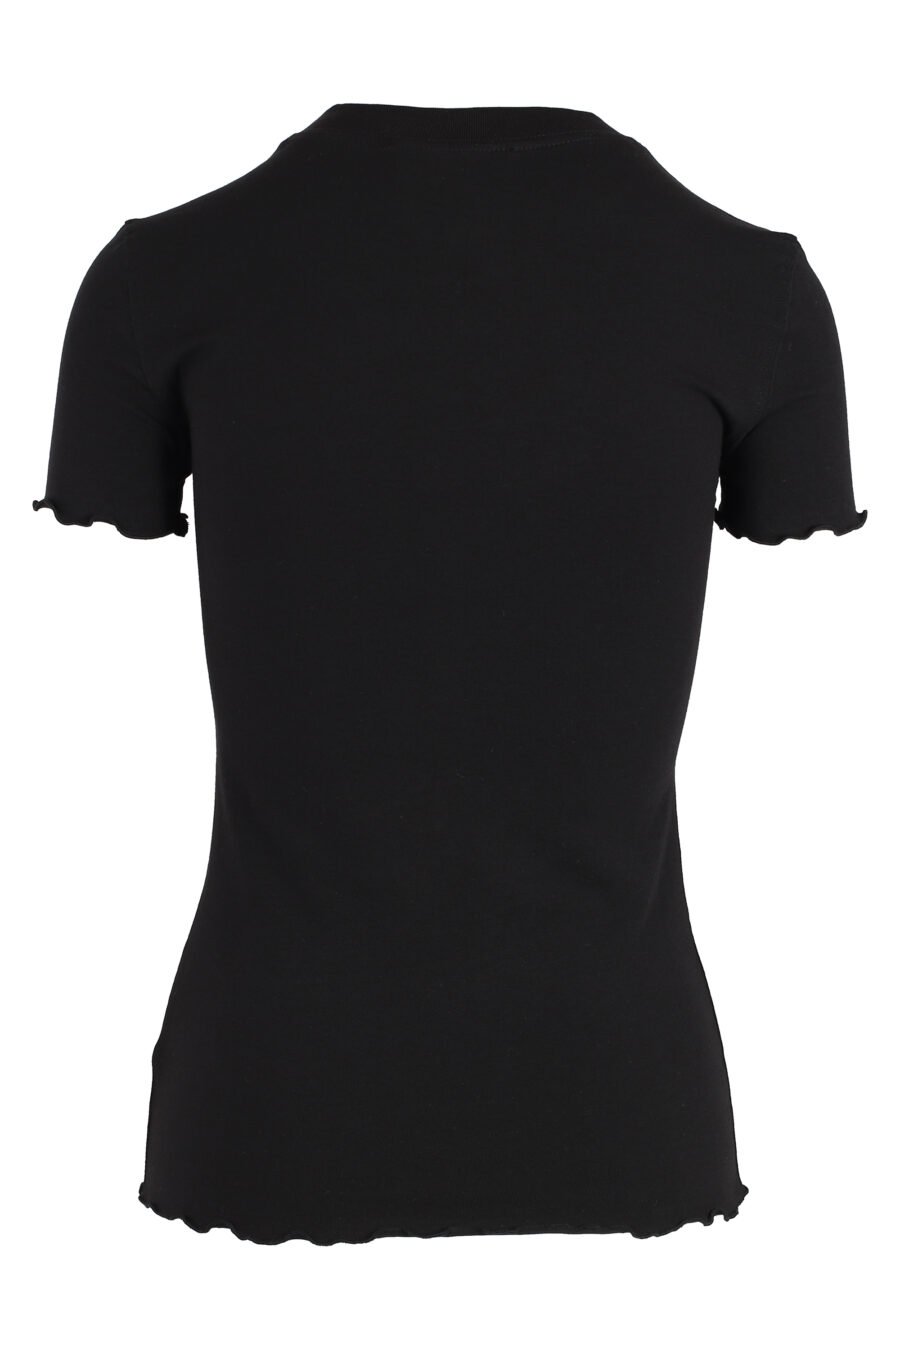 Camiseta negra con logo blanco estilo pincel - IMG 4878